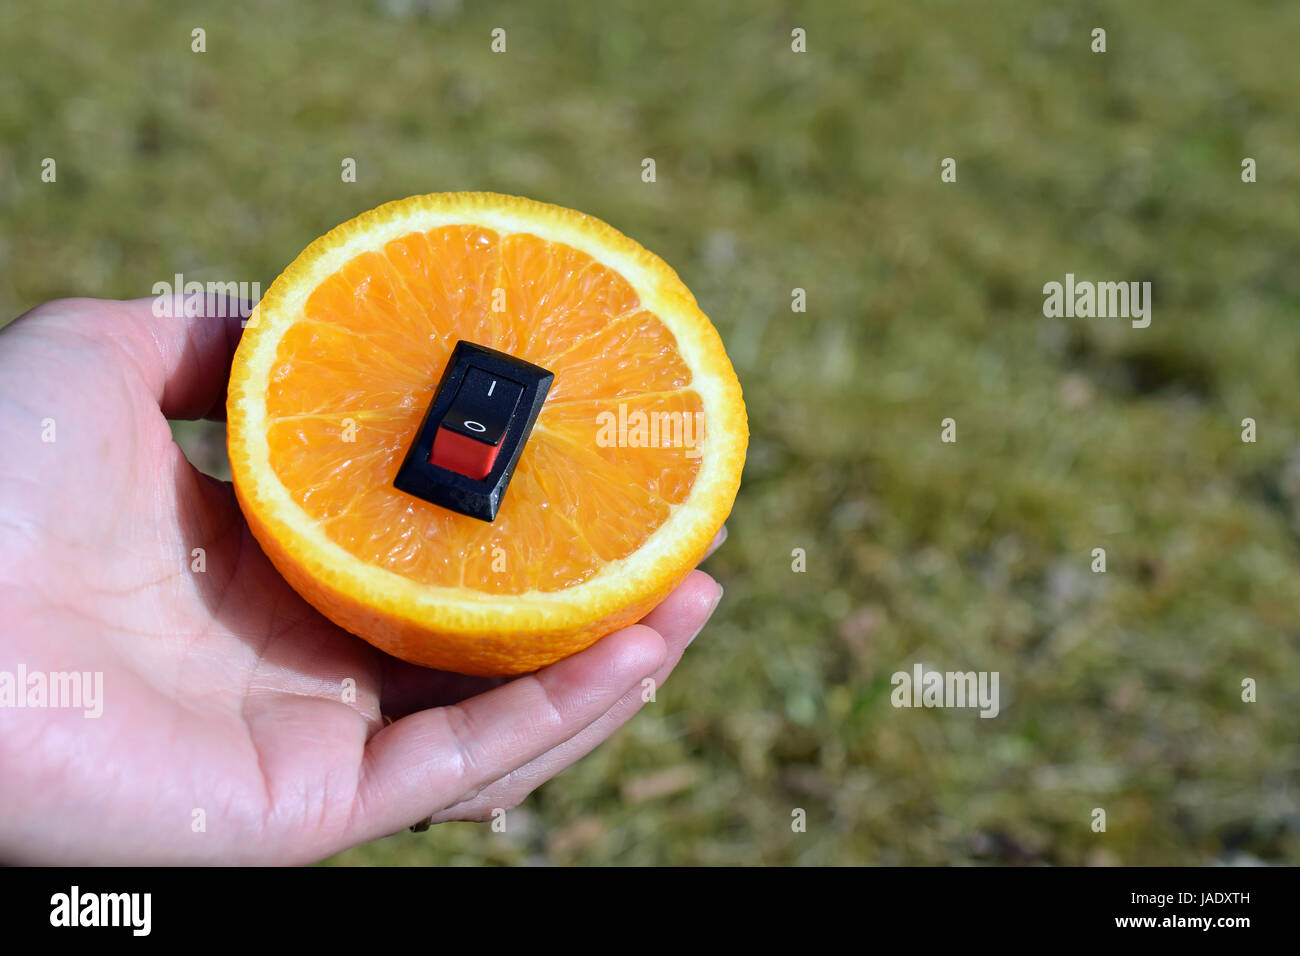 Unico cibo sano concetto. Donna mano che tiene una piastra con juicy orange con inserito un interruttore di alimentazione nel senso di un cambiamento di vita più sana. Foto Stock